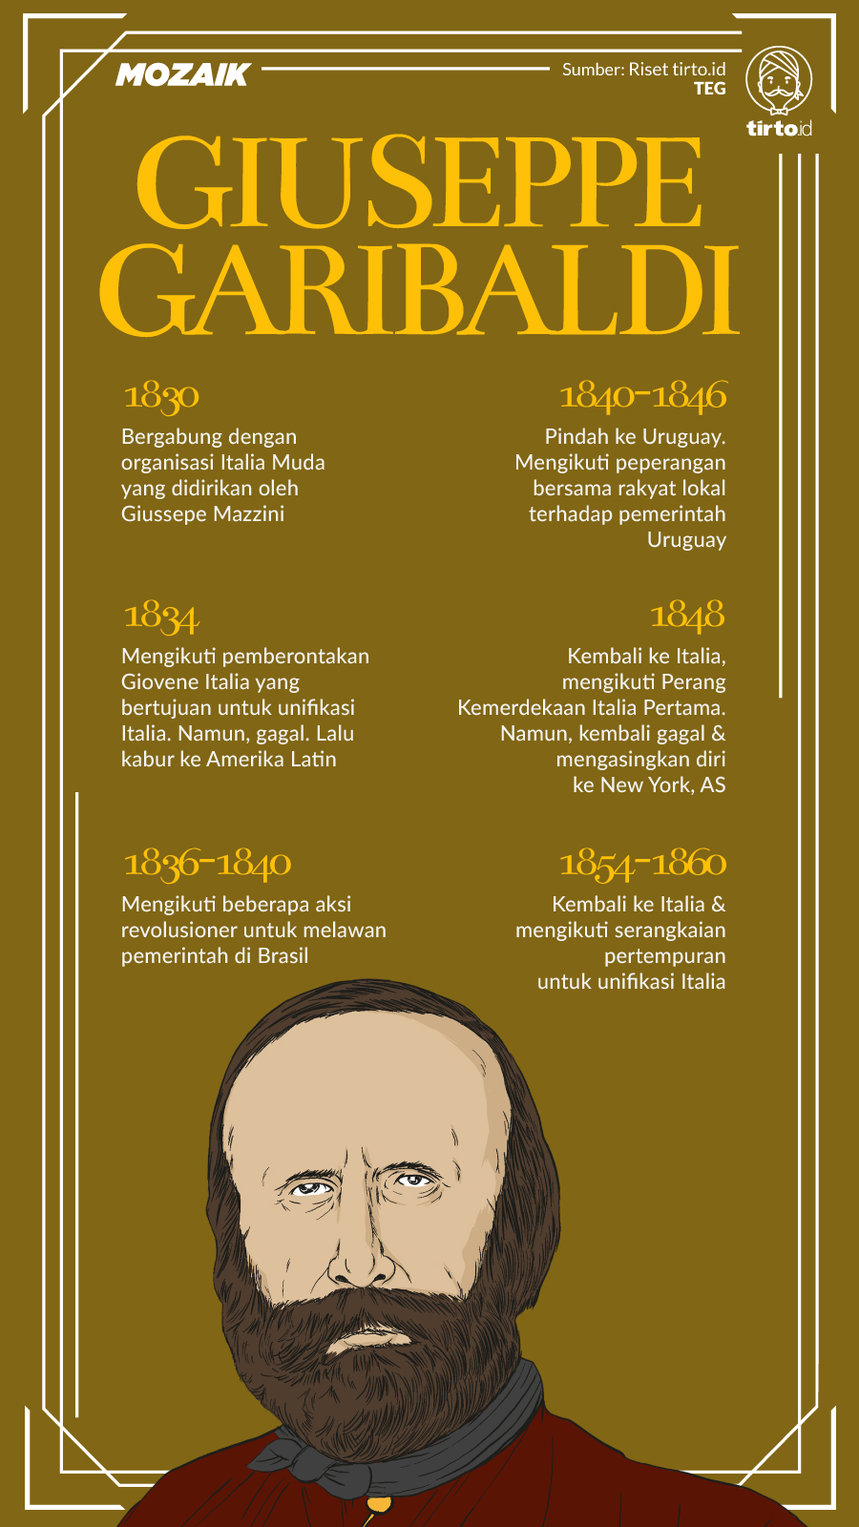 Infografik Mozaik Giuseppe Garibaldi